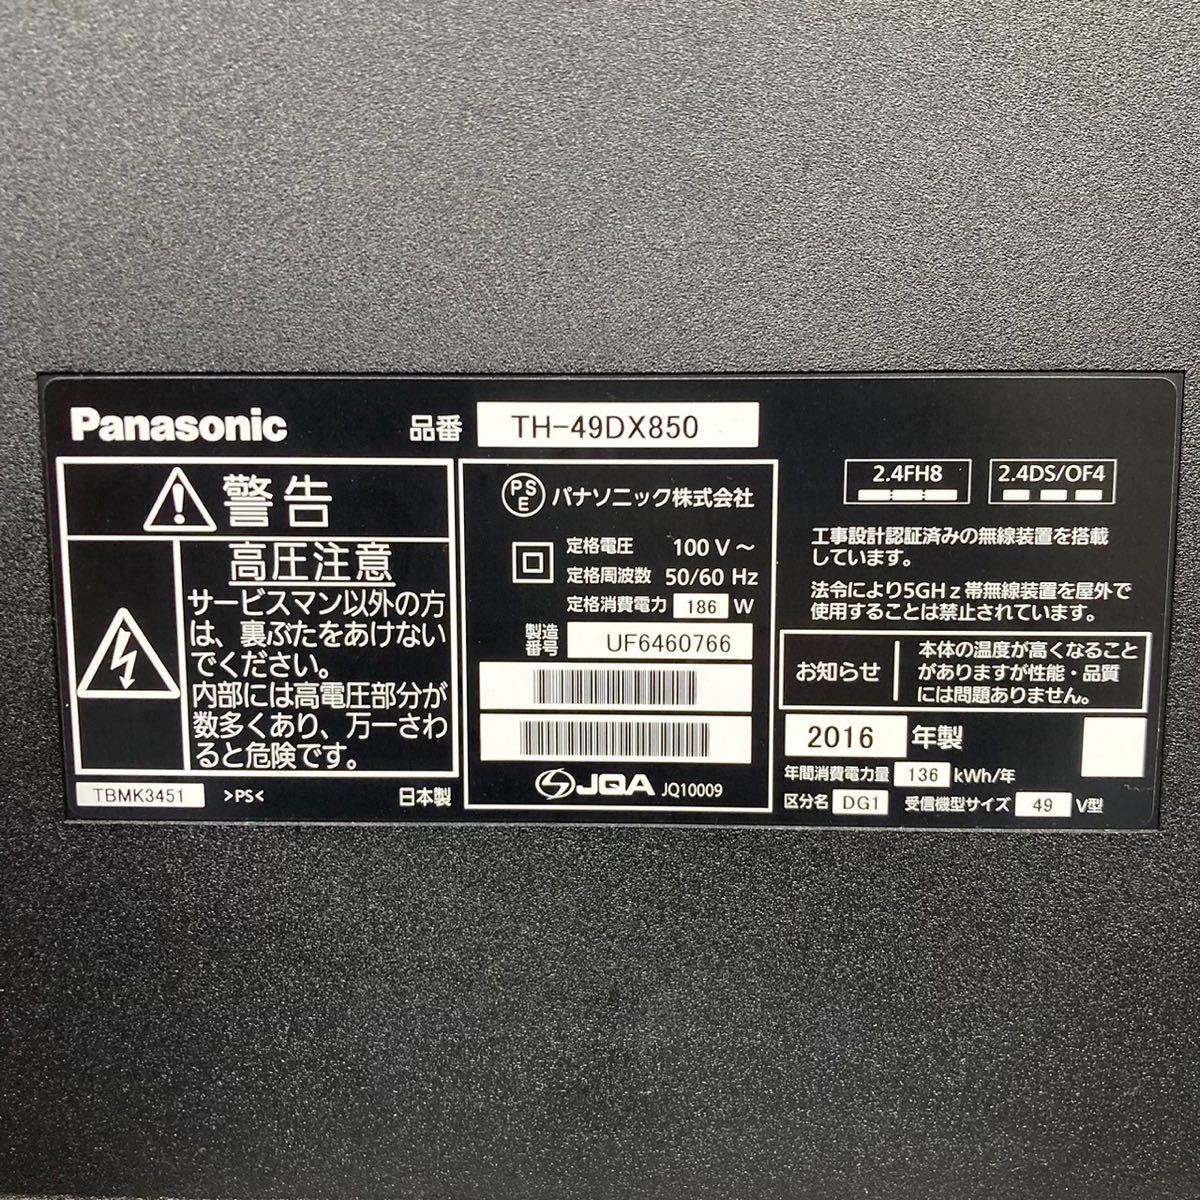 Panasonic 液晶テレビ TH-49DX850 D287 49V型 家電 テレビ | nagisa